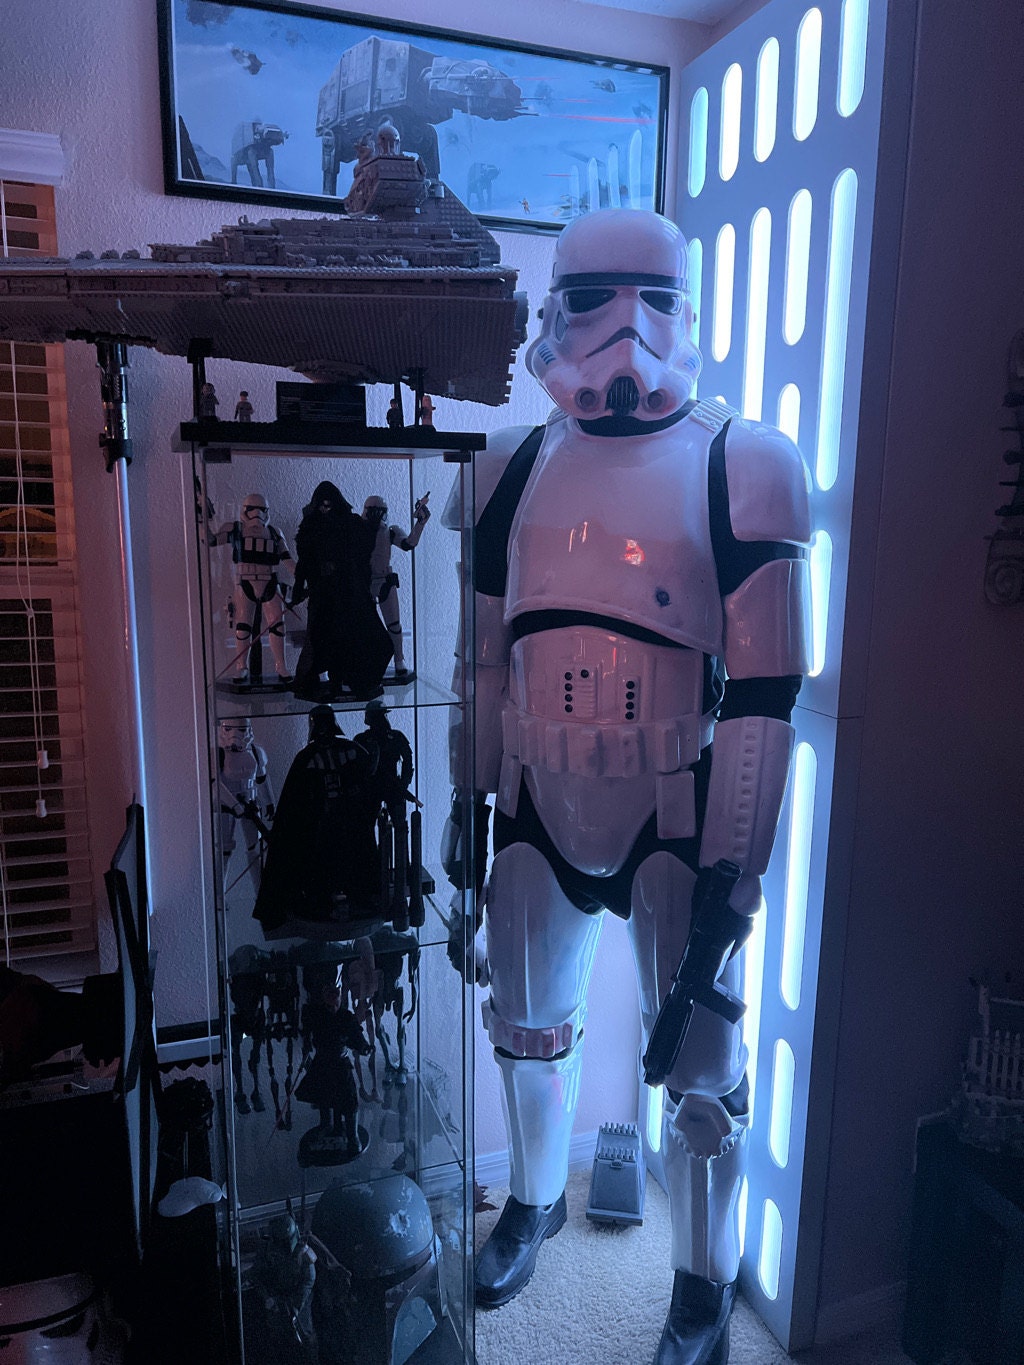 Death Star Wall next to Star Wars strom trooper display